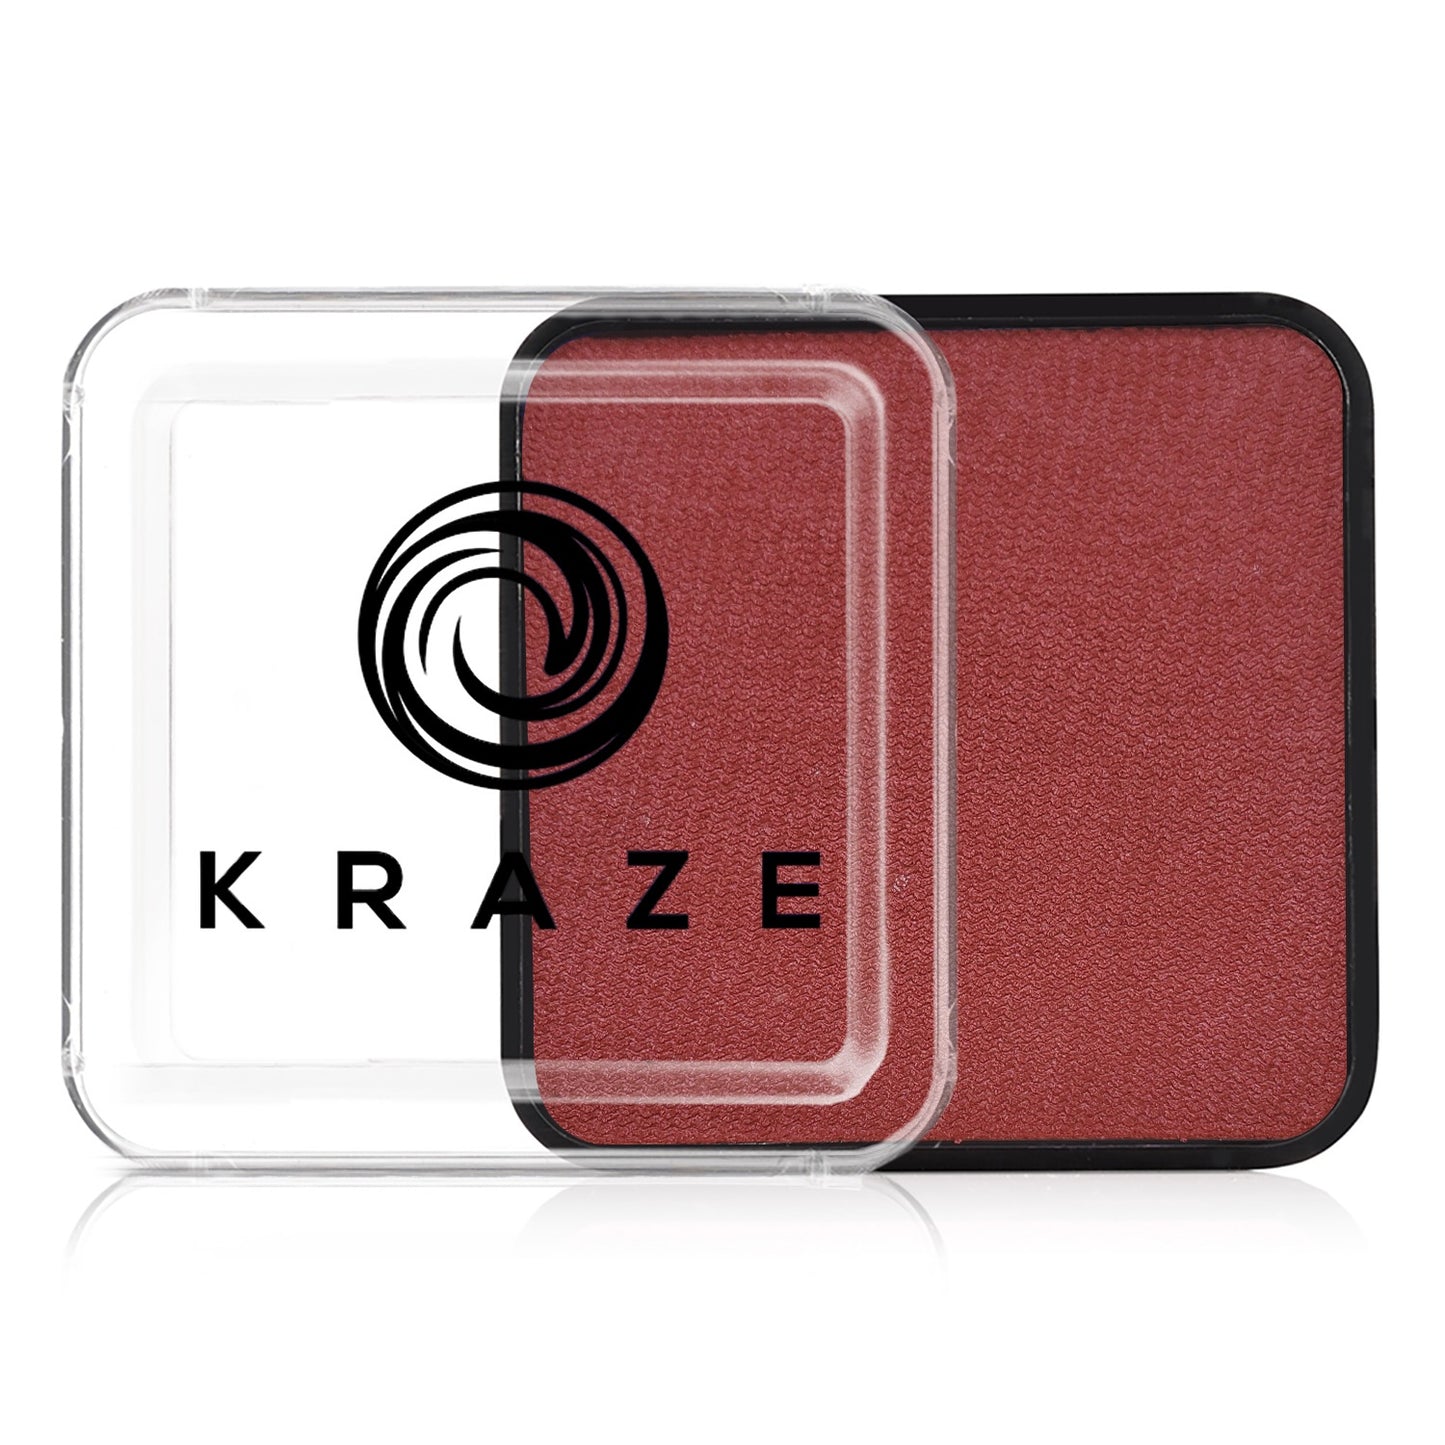 Kraze FX Face & Body Paint - Metallic Red (25 gm)